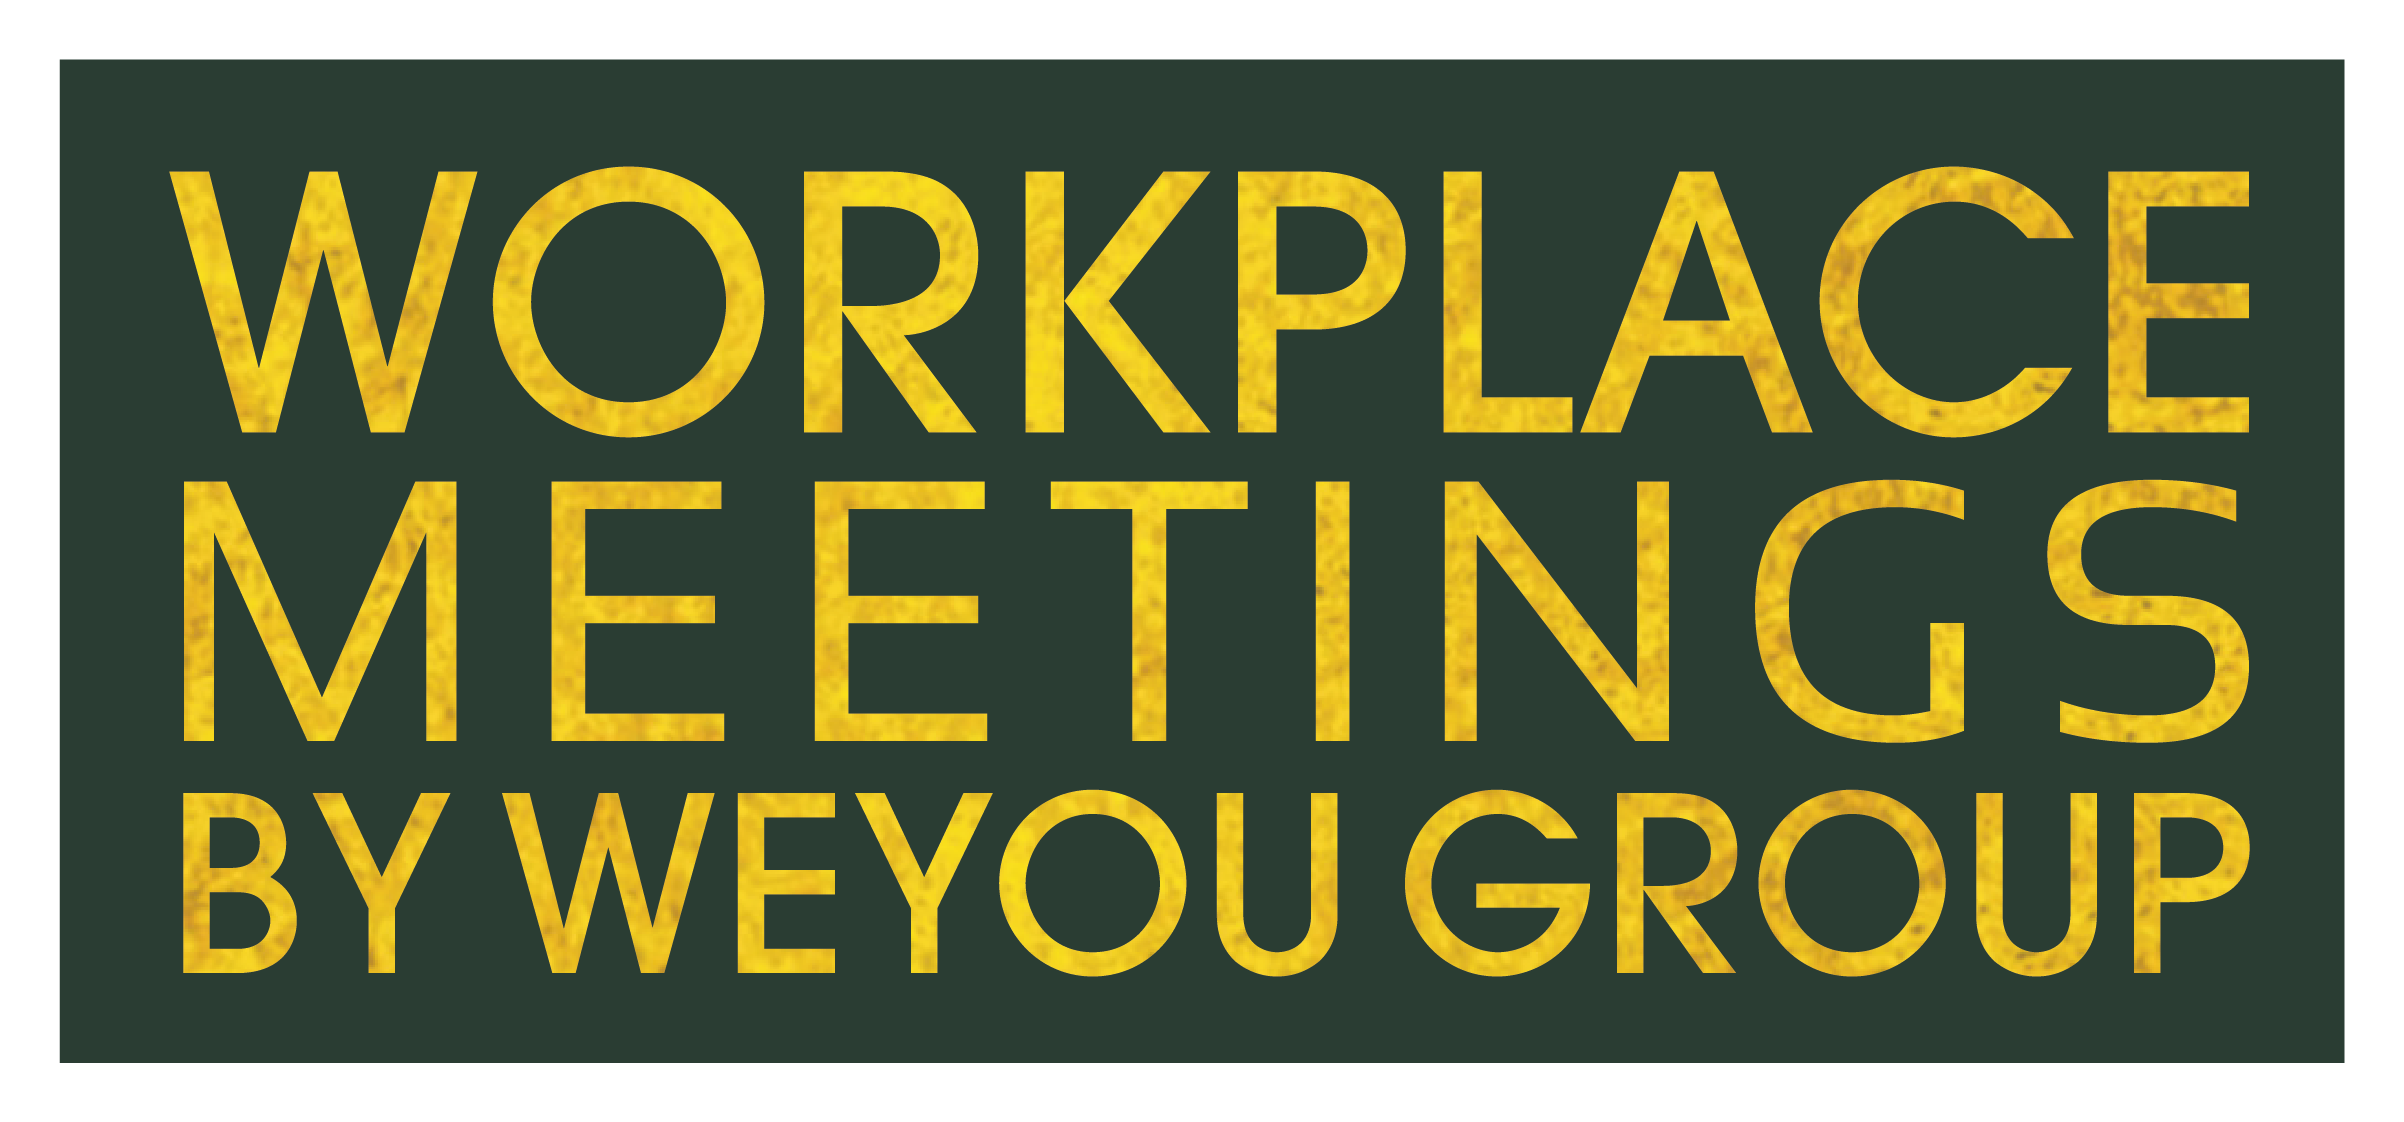 Workplace Meetings